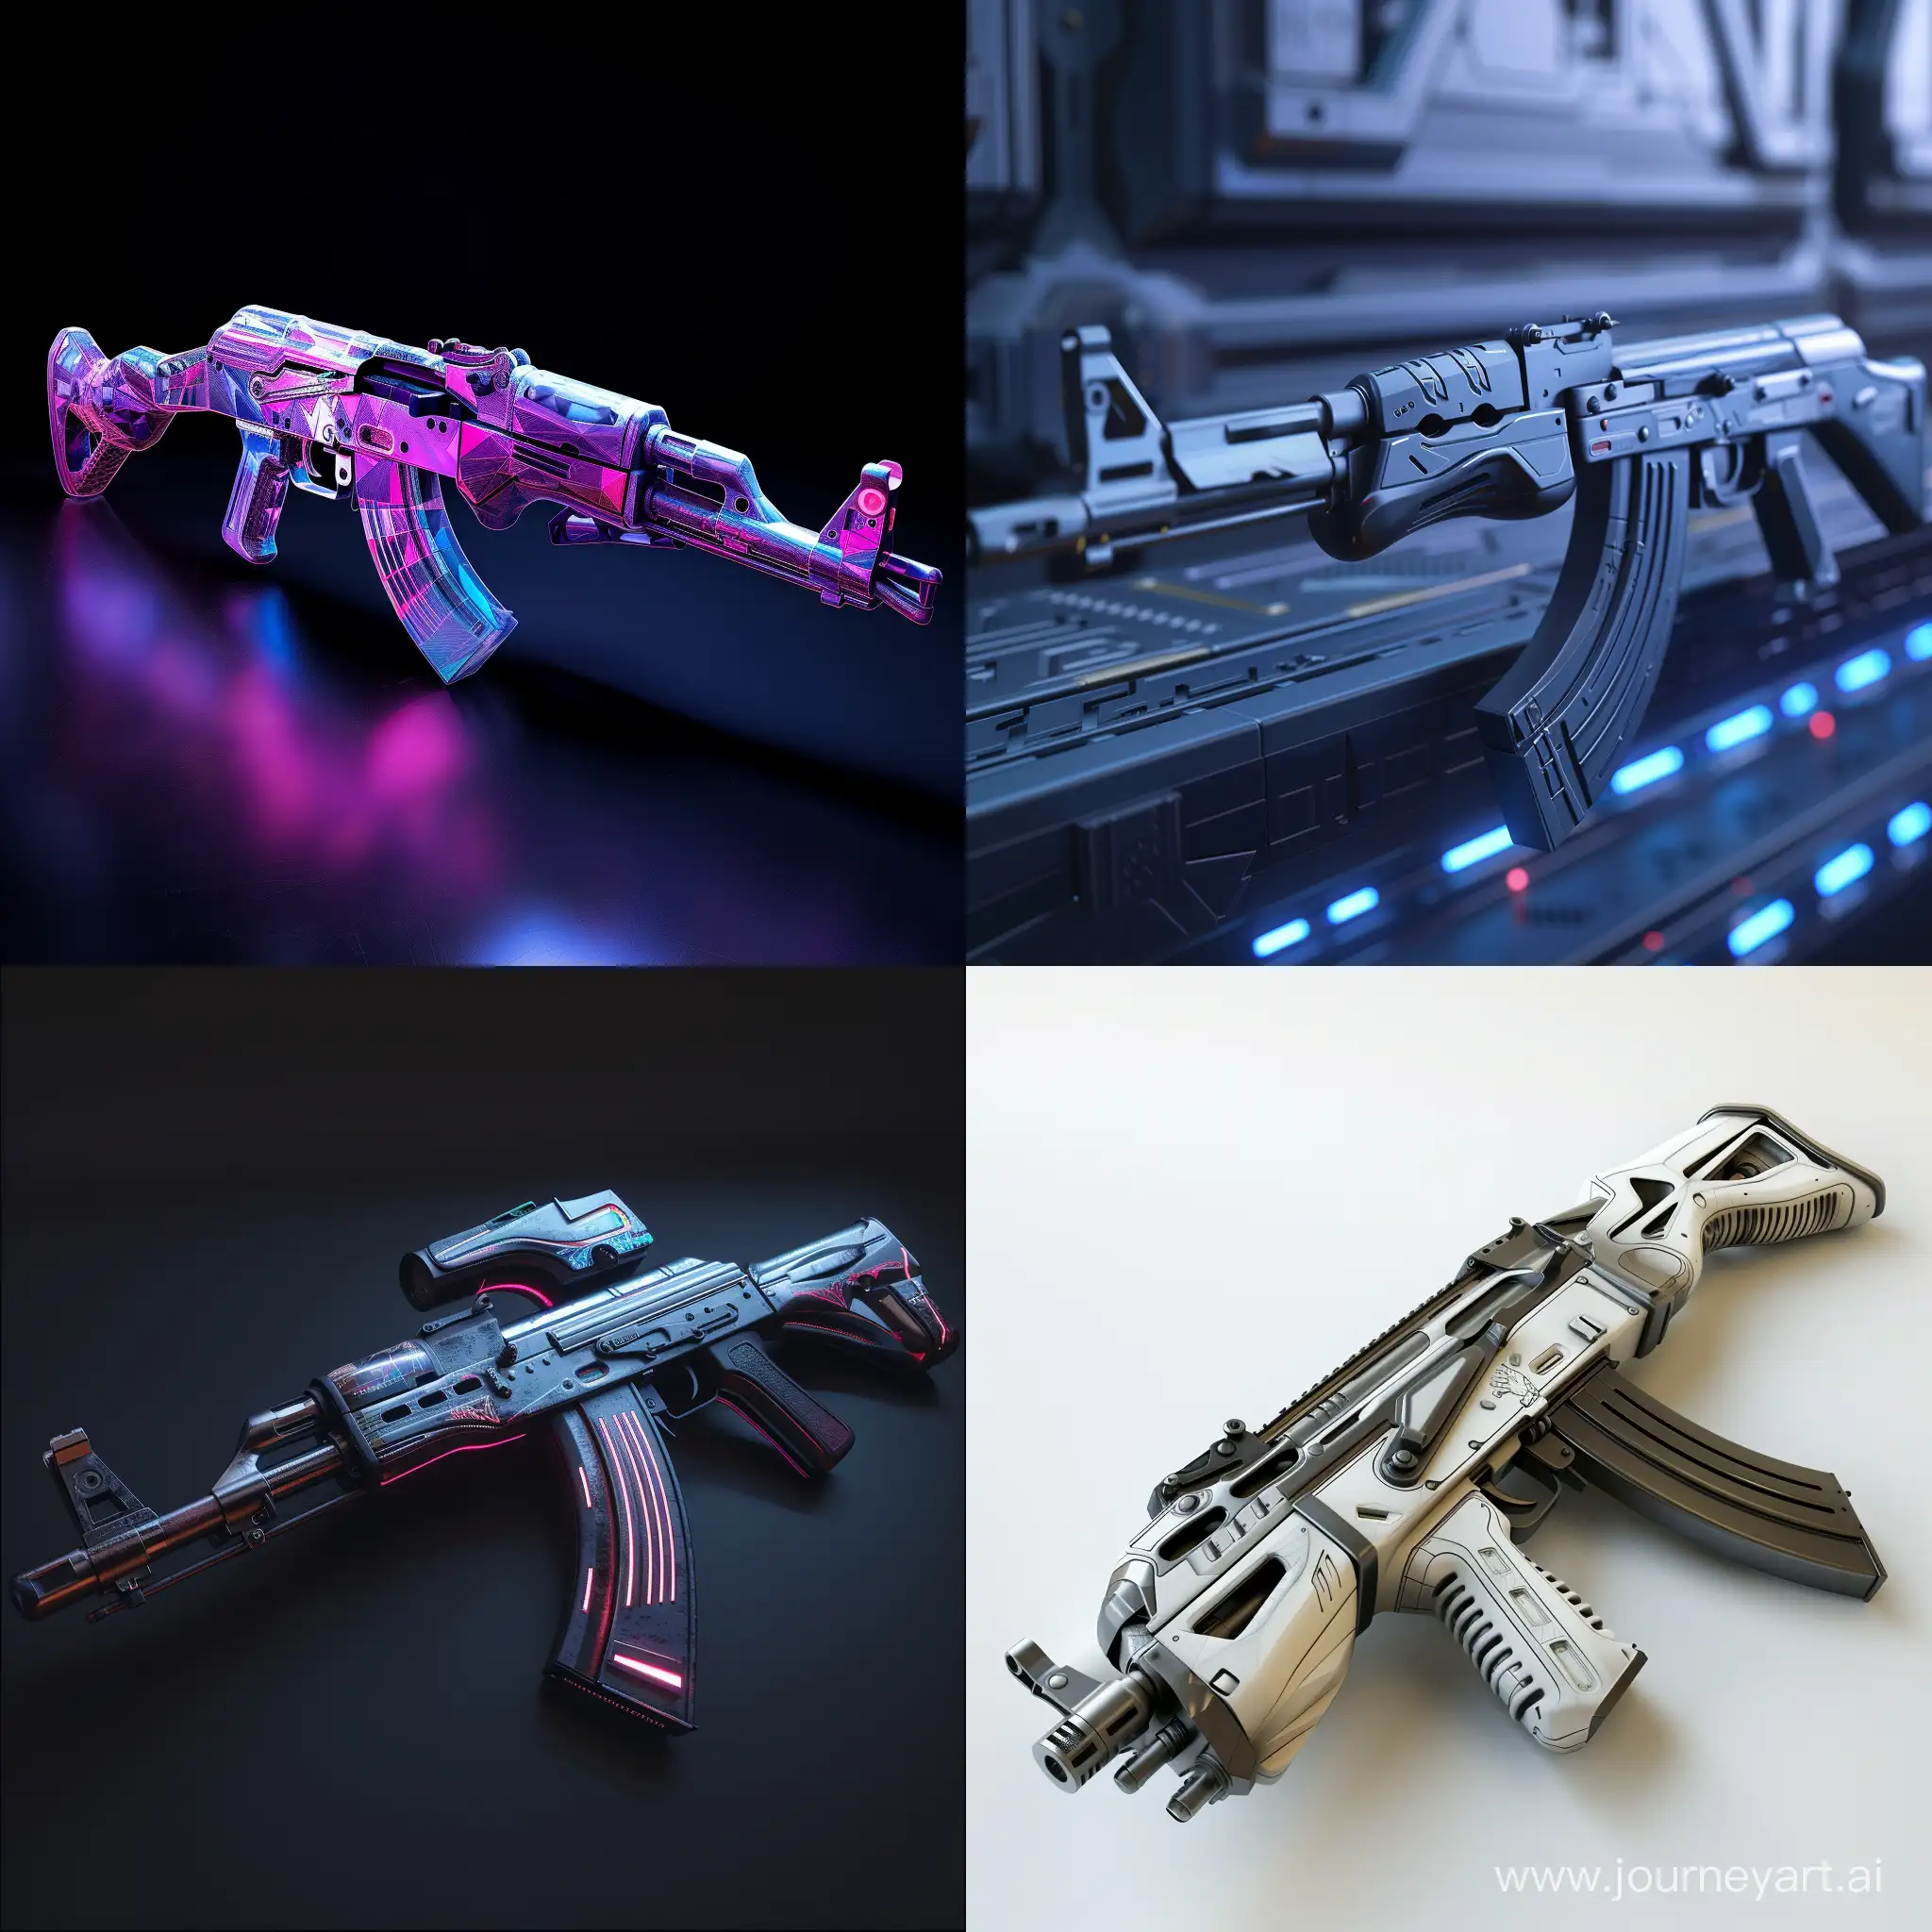 Futuristic AK-47, composite materials, octane render